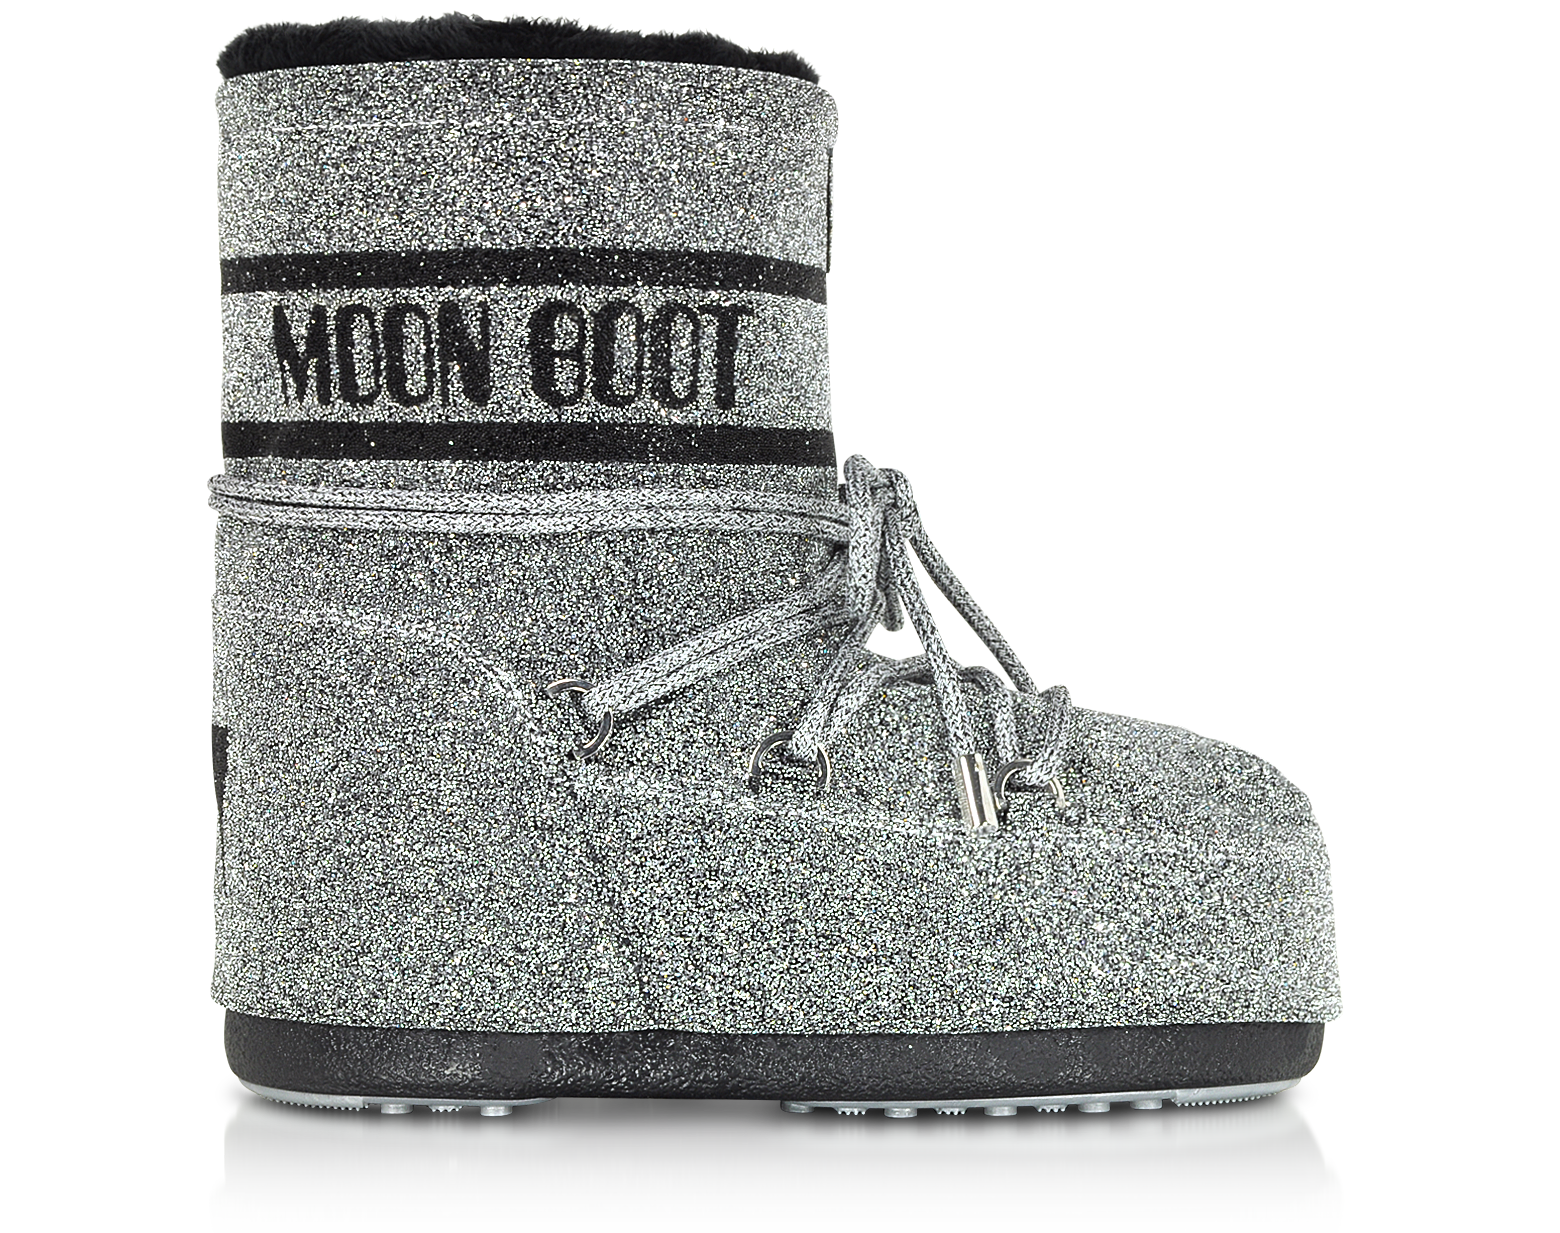 moon boot saldi